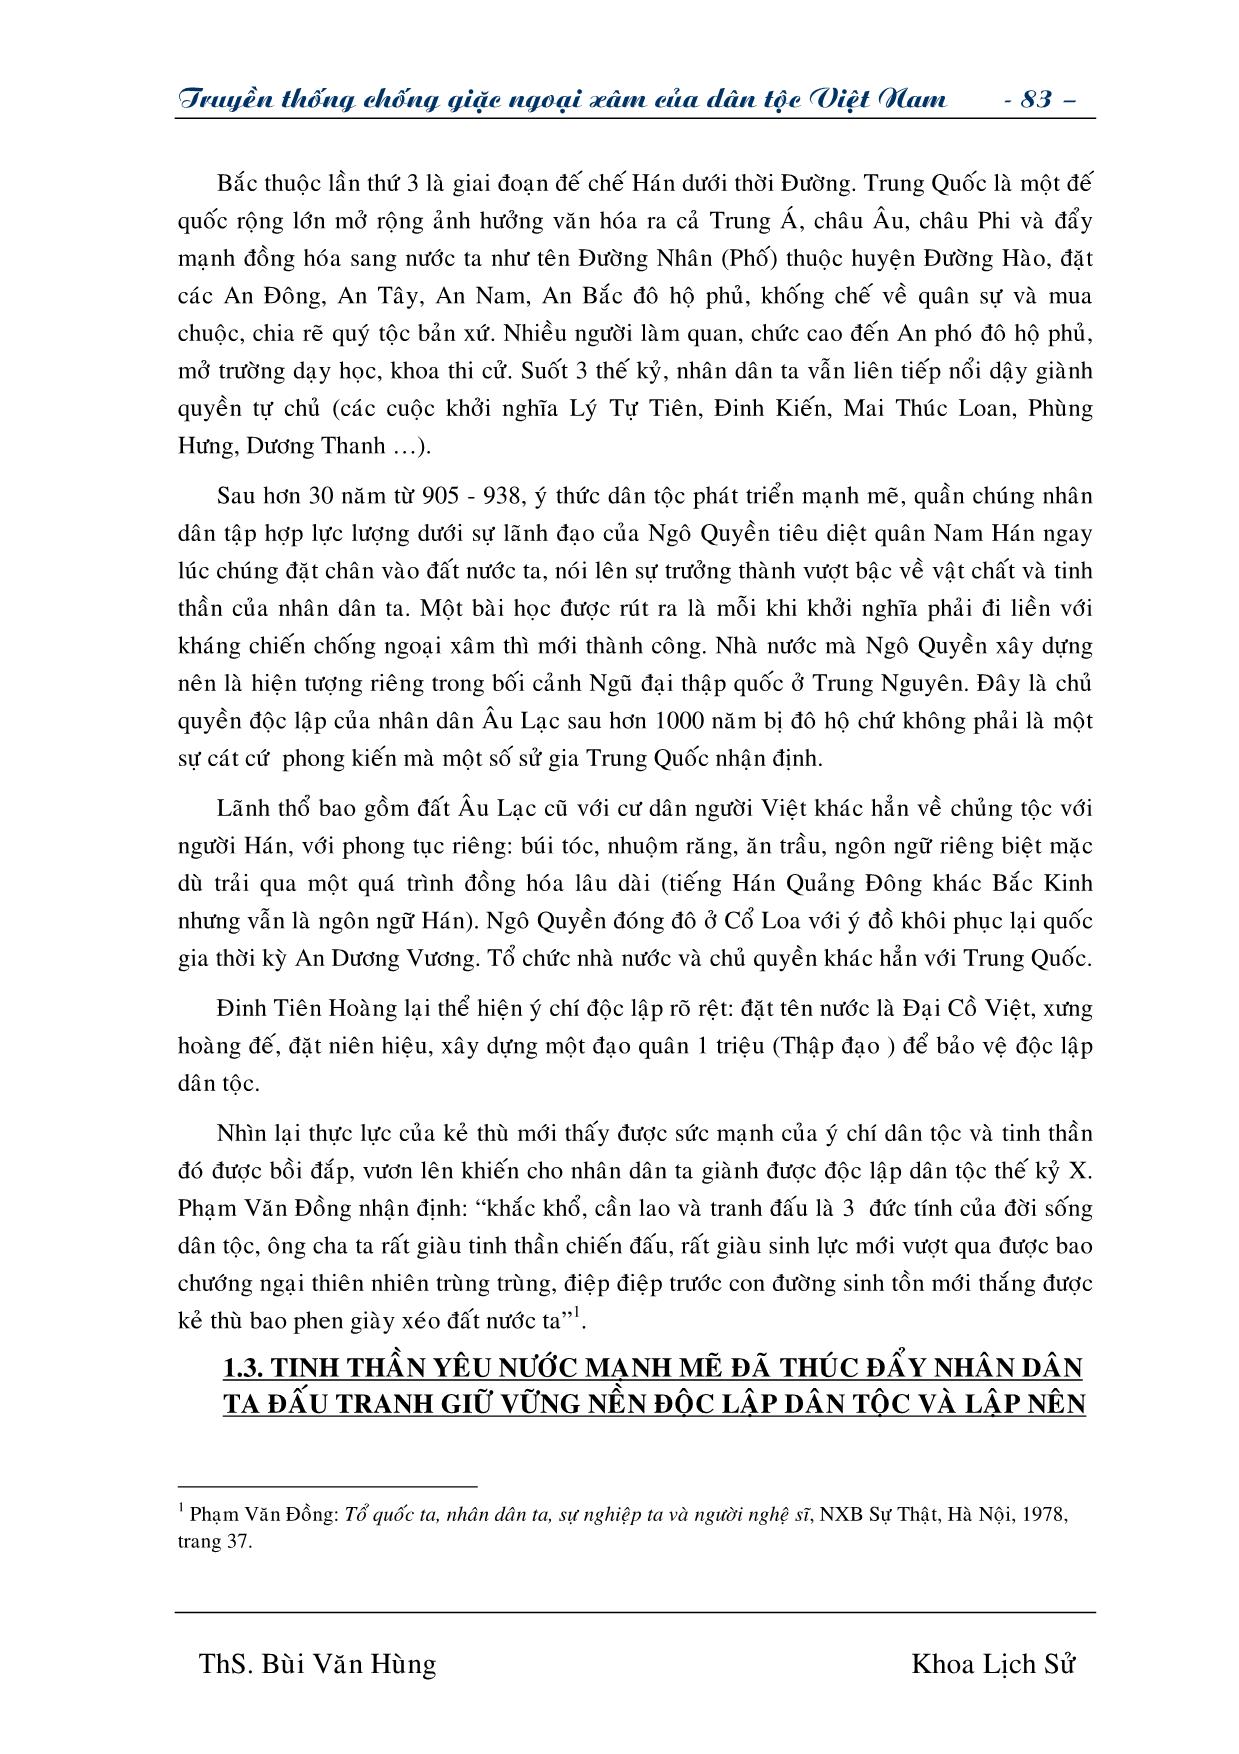 Giáo trình Truyền thống chống giặc ngoại xâm của dân tộc Việt Nam (Phần 2) trang 5